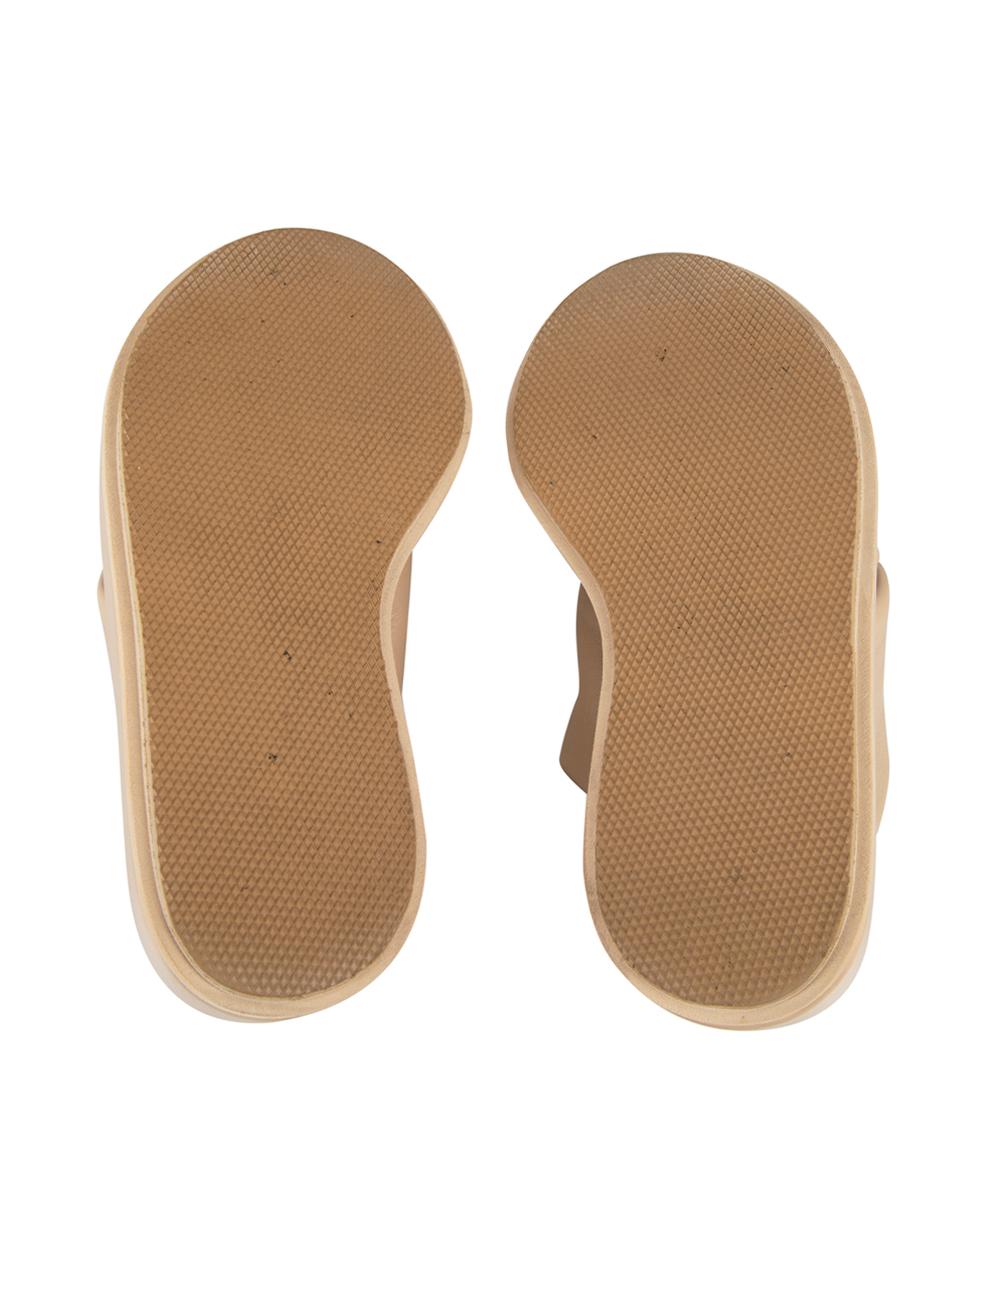 Women's Beige Leather Slingback Platform Sandals Size UK 3.5 For Sale